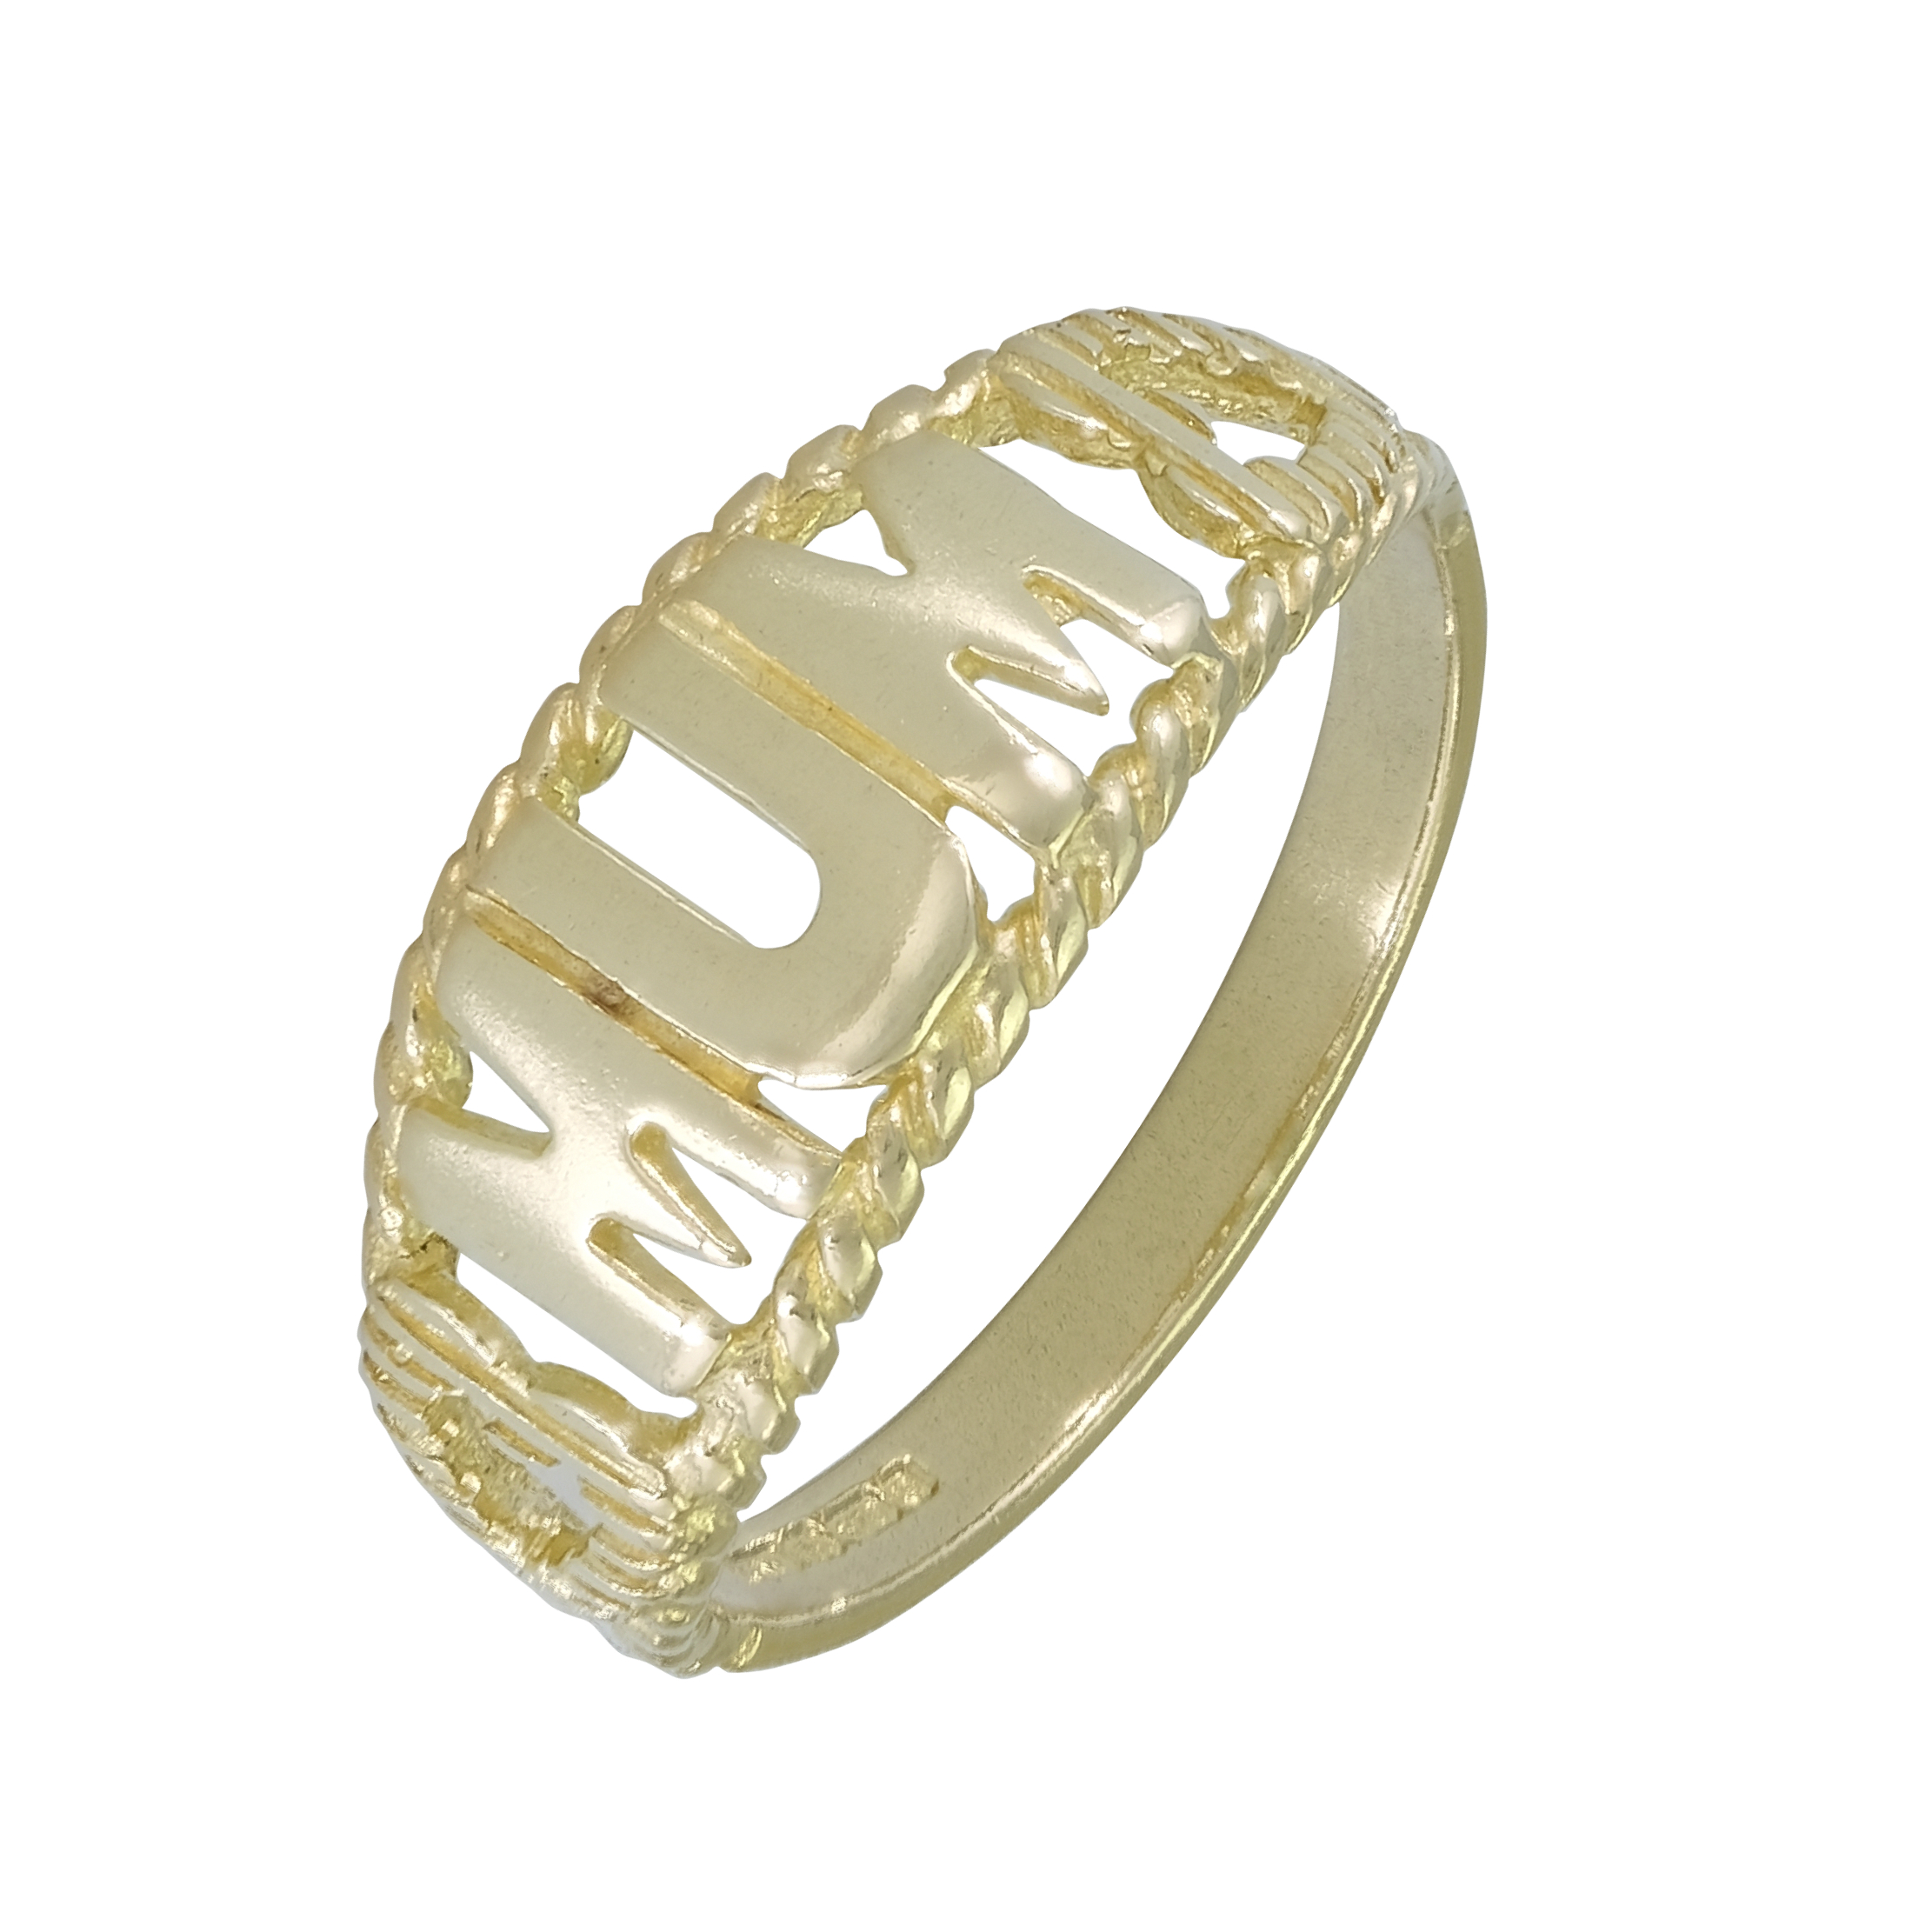 9ct Yellow Gold “MUM” Ring
